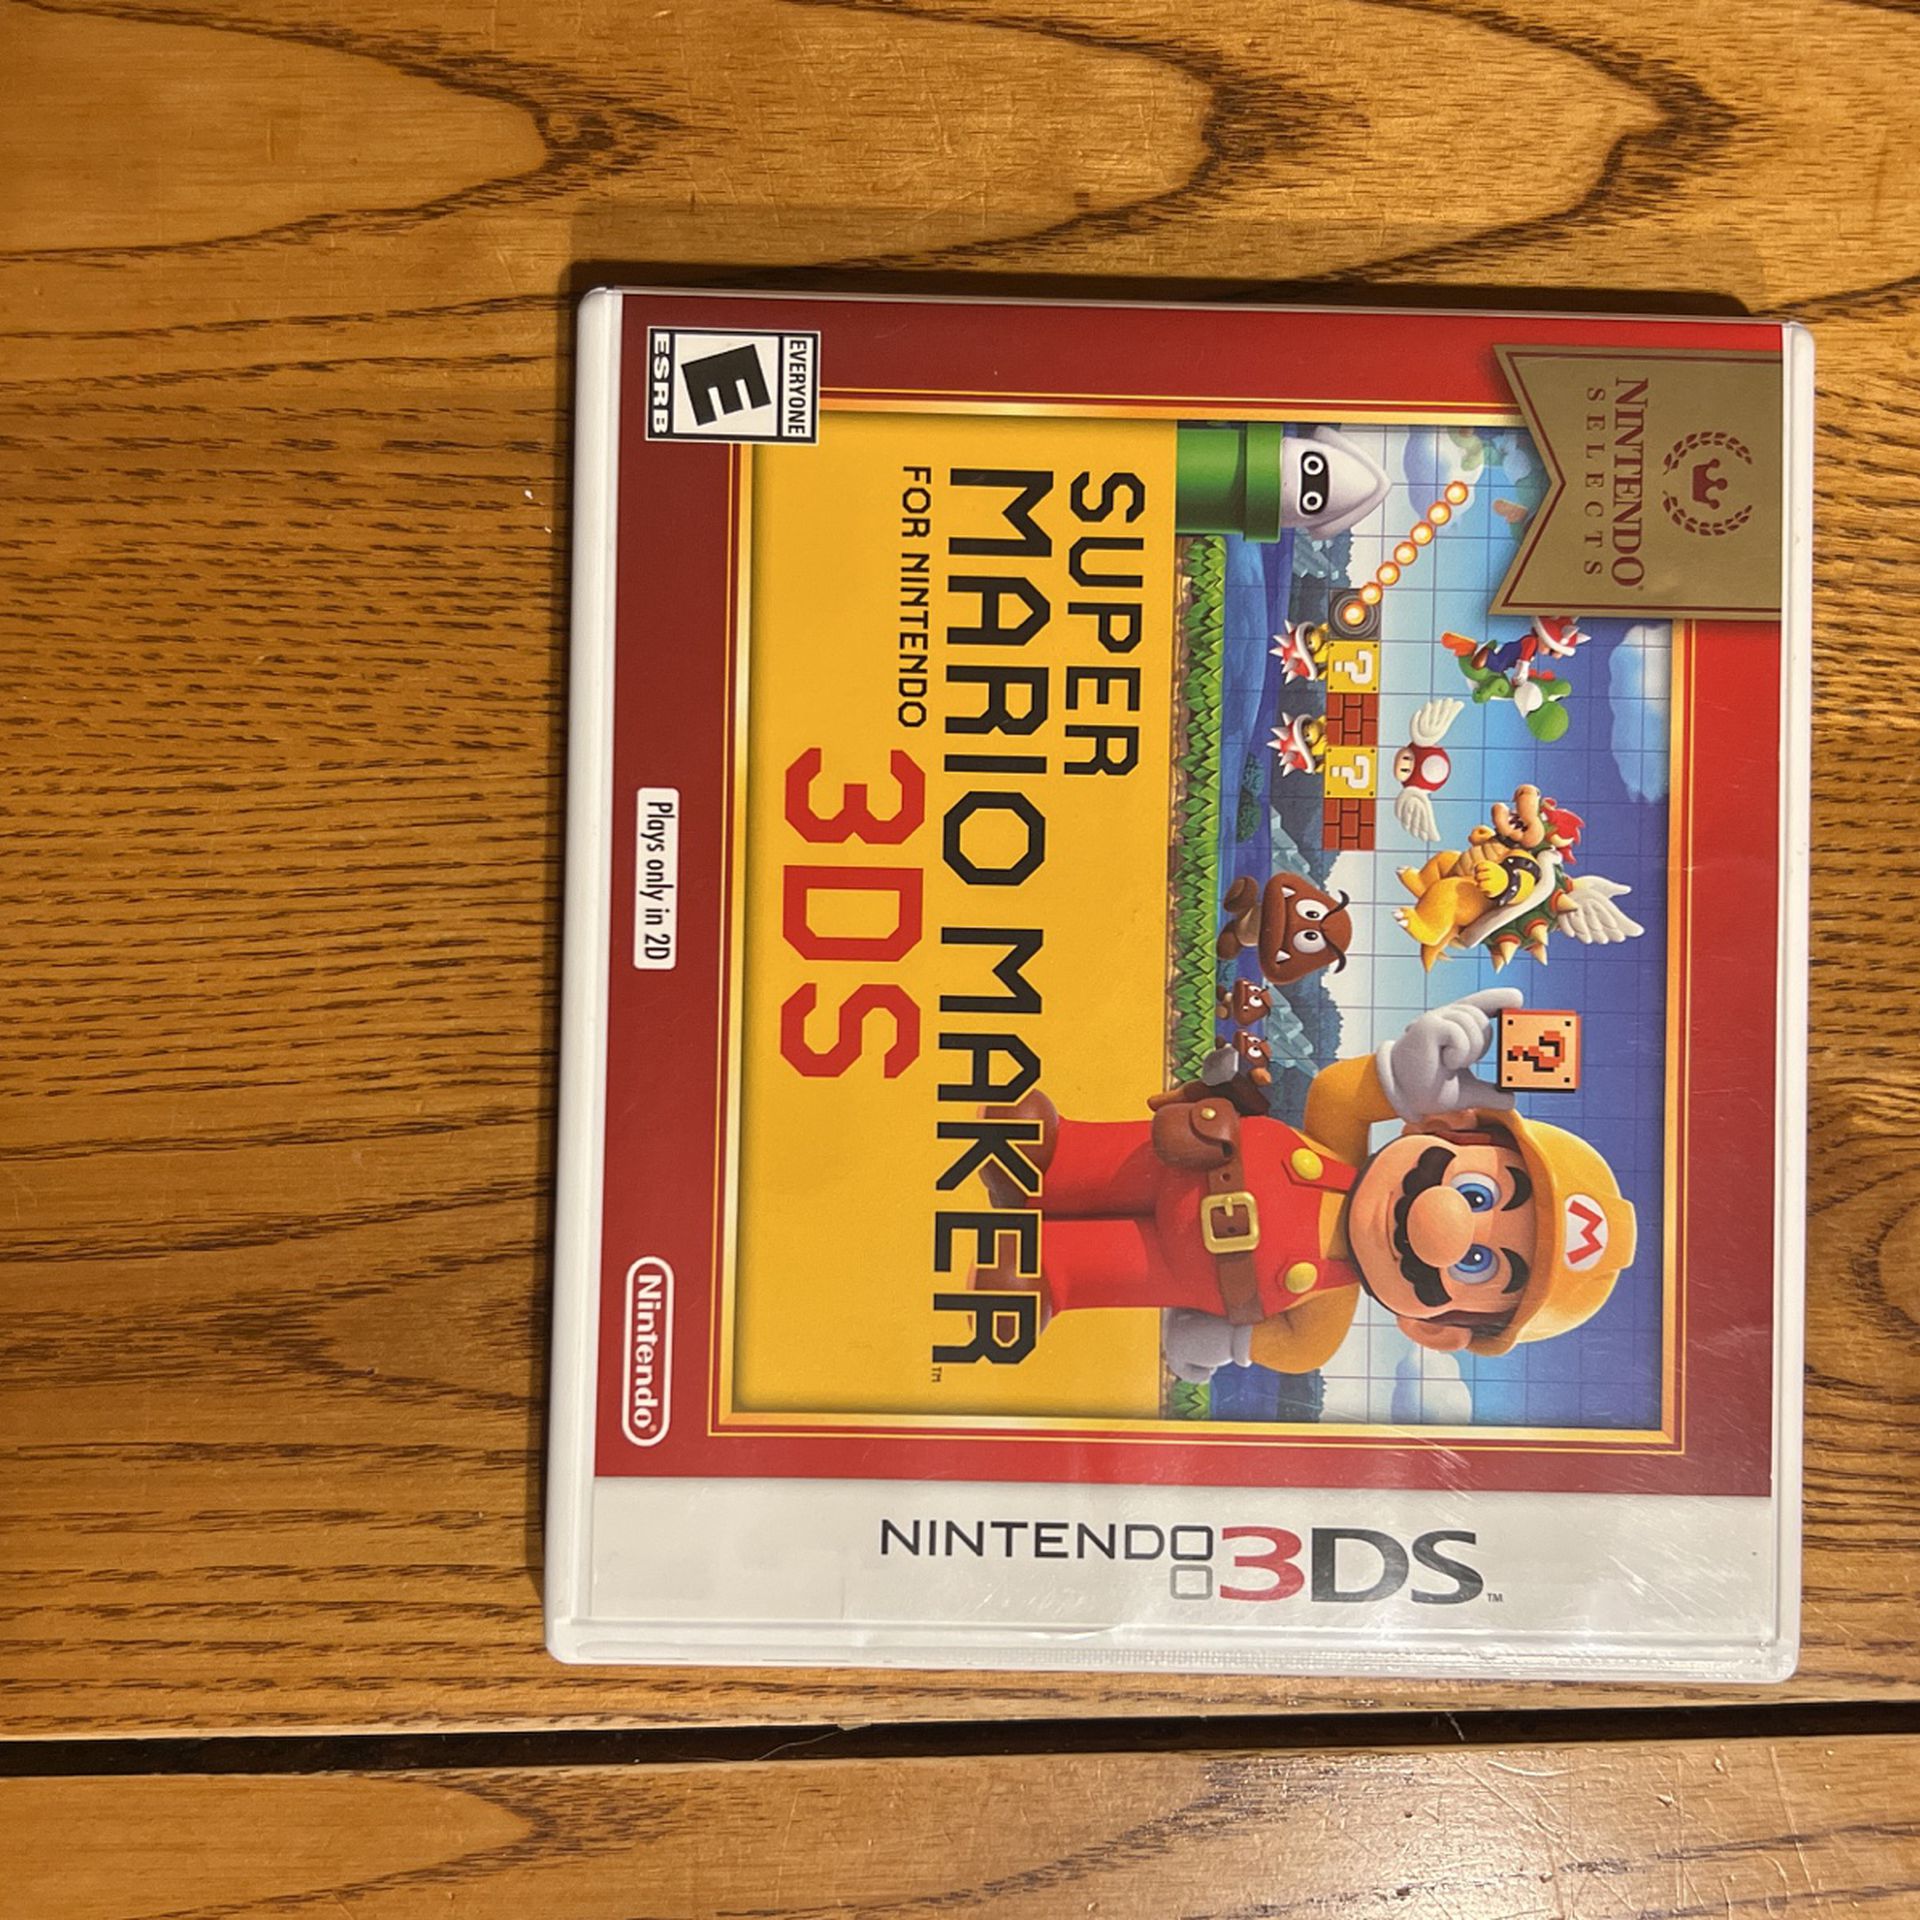 Super Mario Maker For Nintendo 3ds